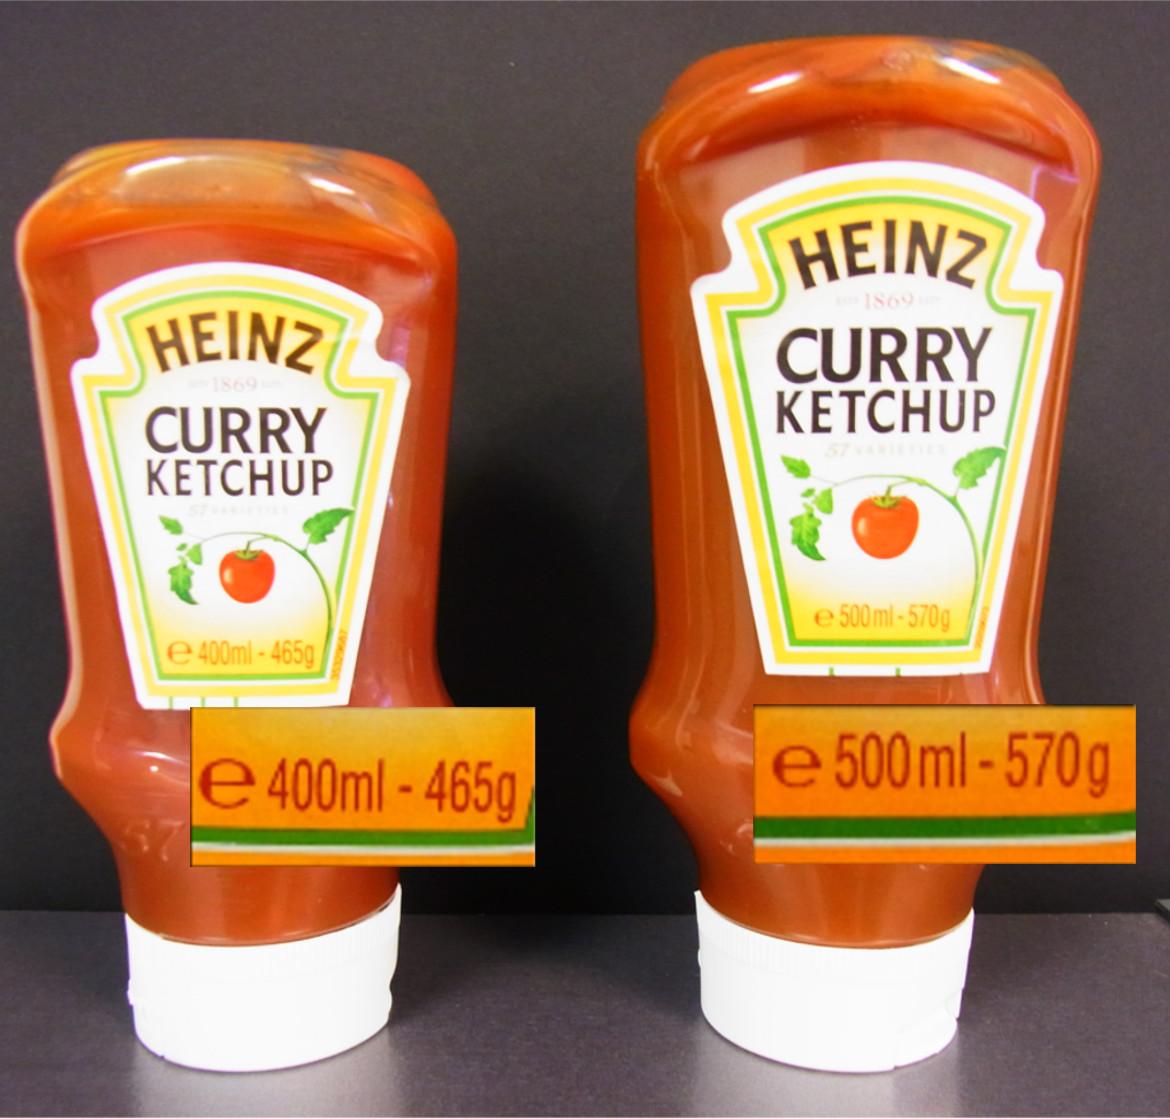 Vergleich der alten und neuen Verpackungsgrößen des Heinz Curry Ketchup